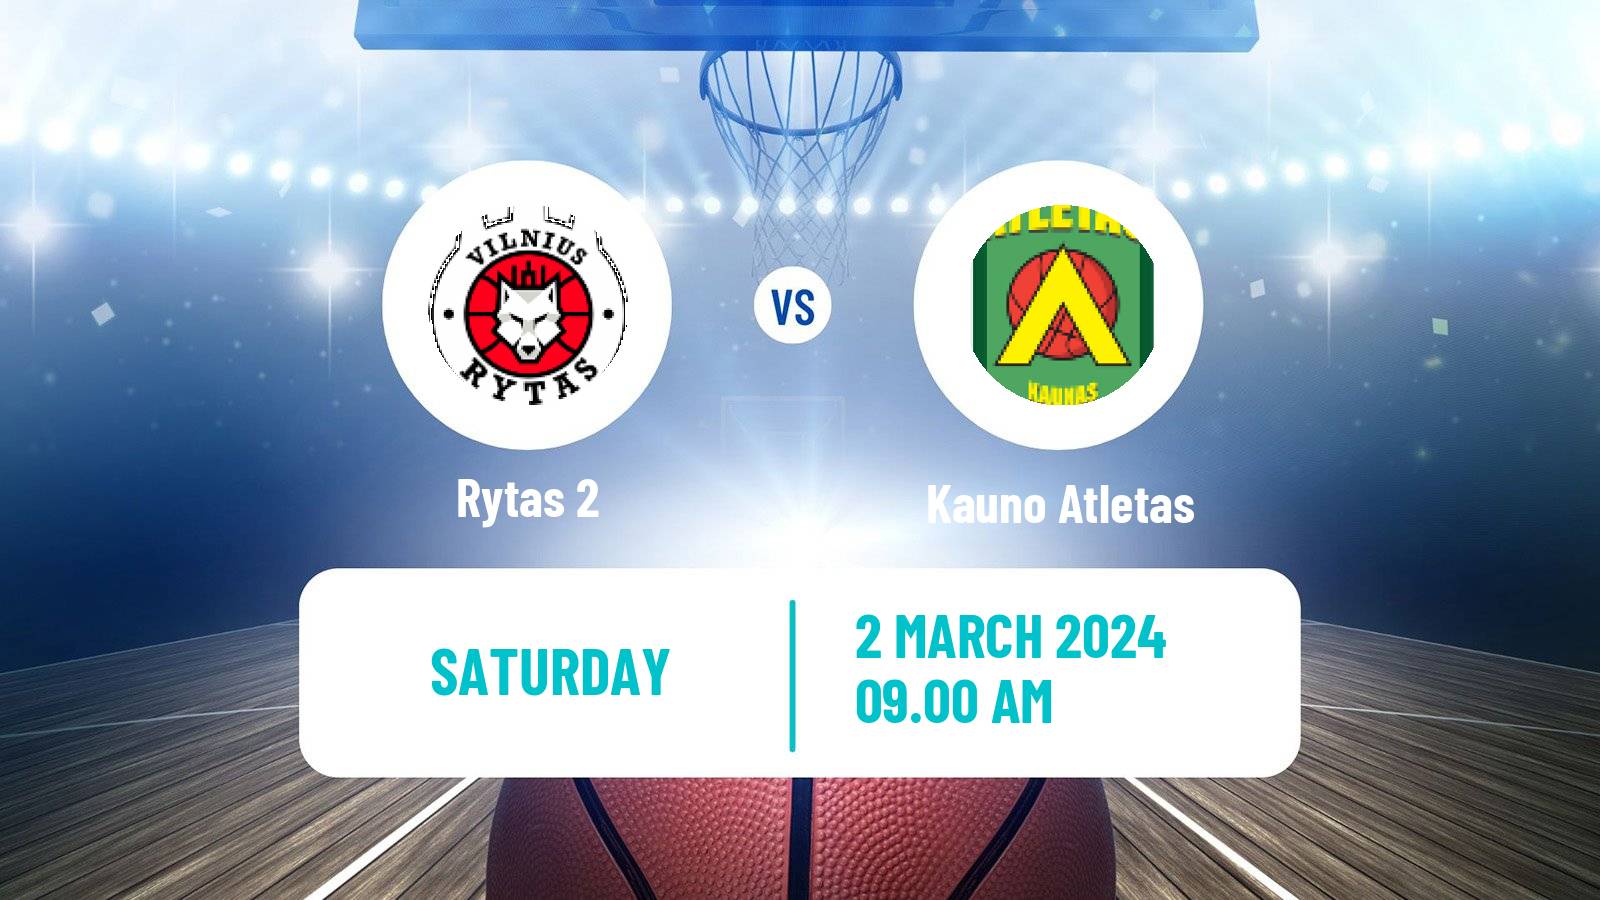 Basketball Lietuvos NKL Rytas 2 - Kauno Atletas